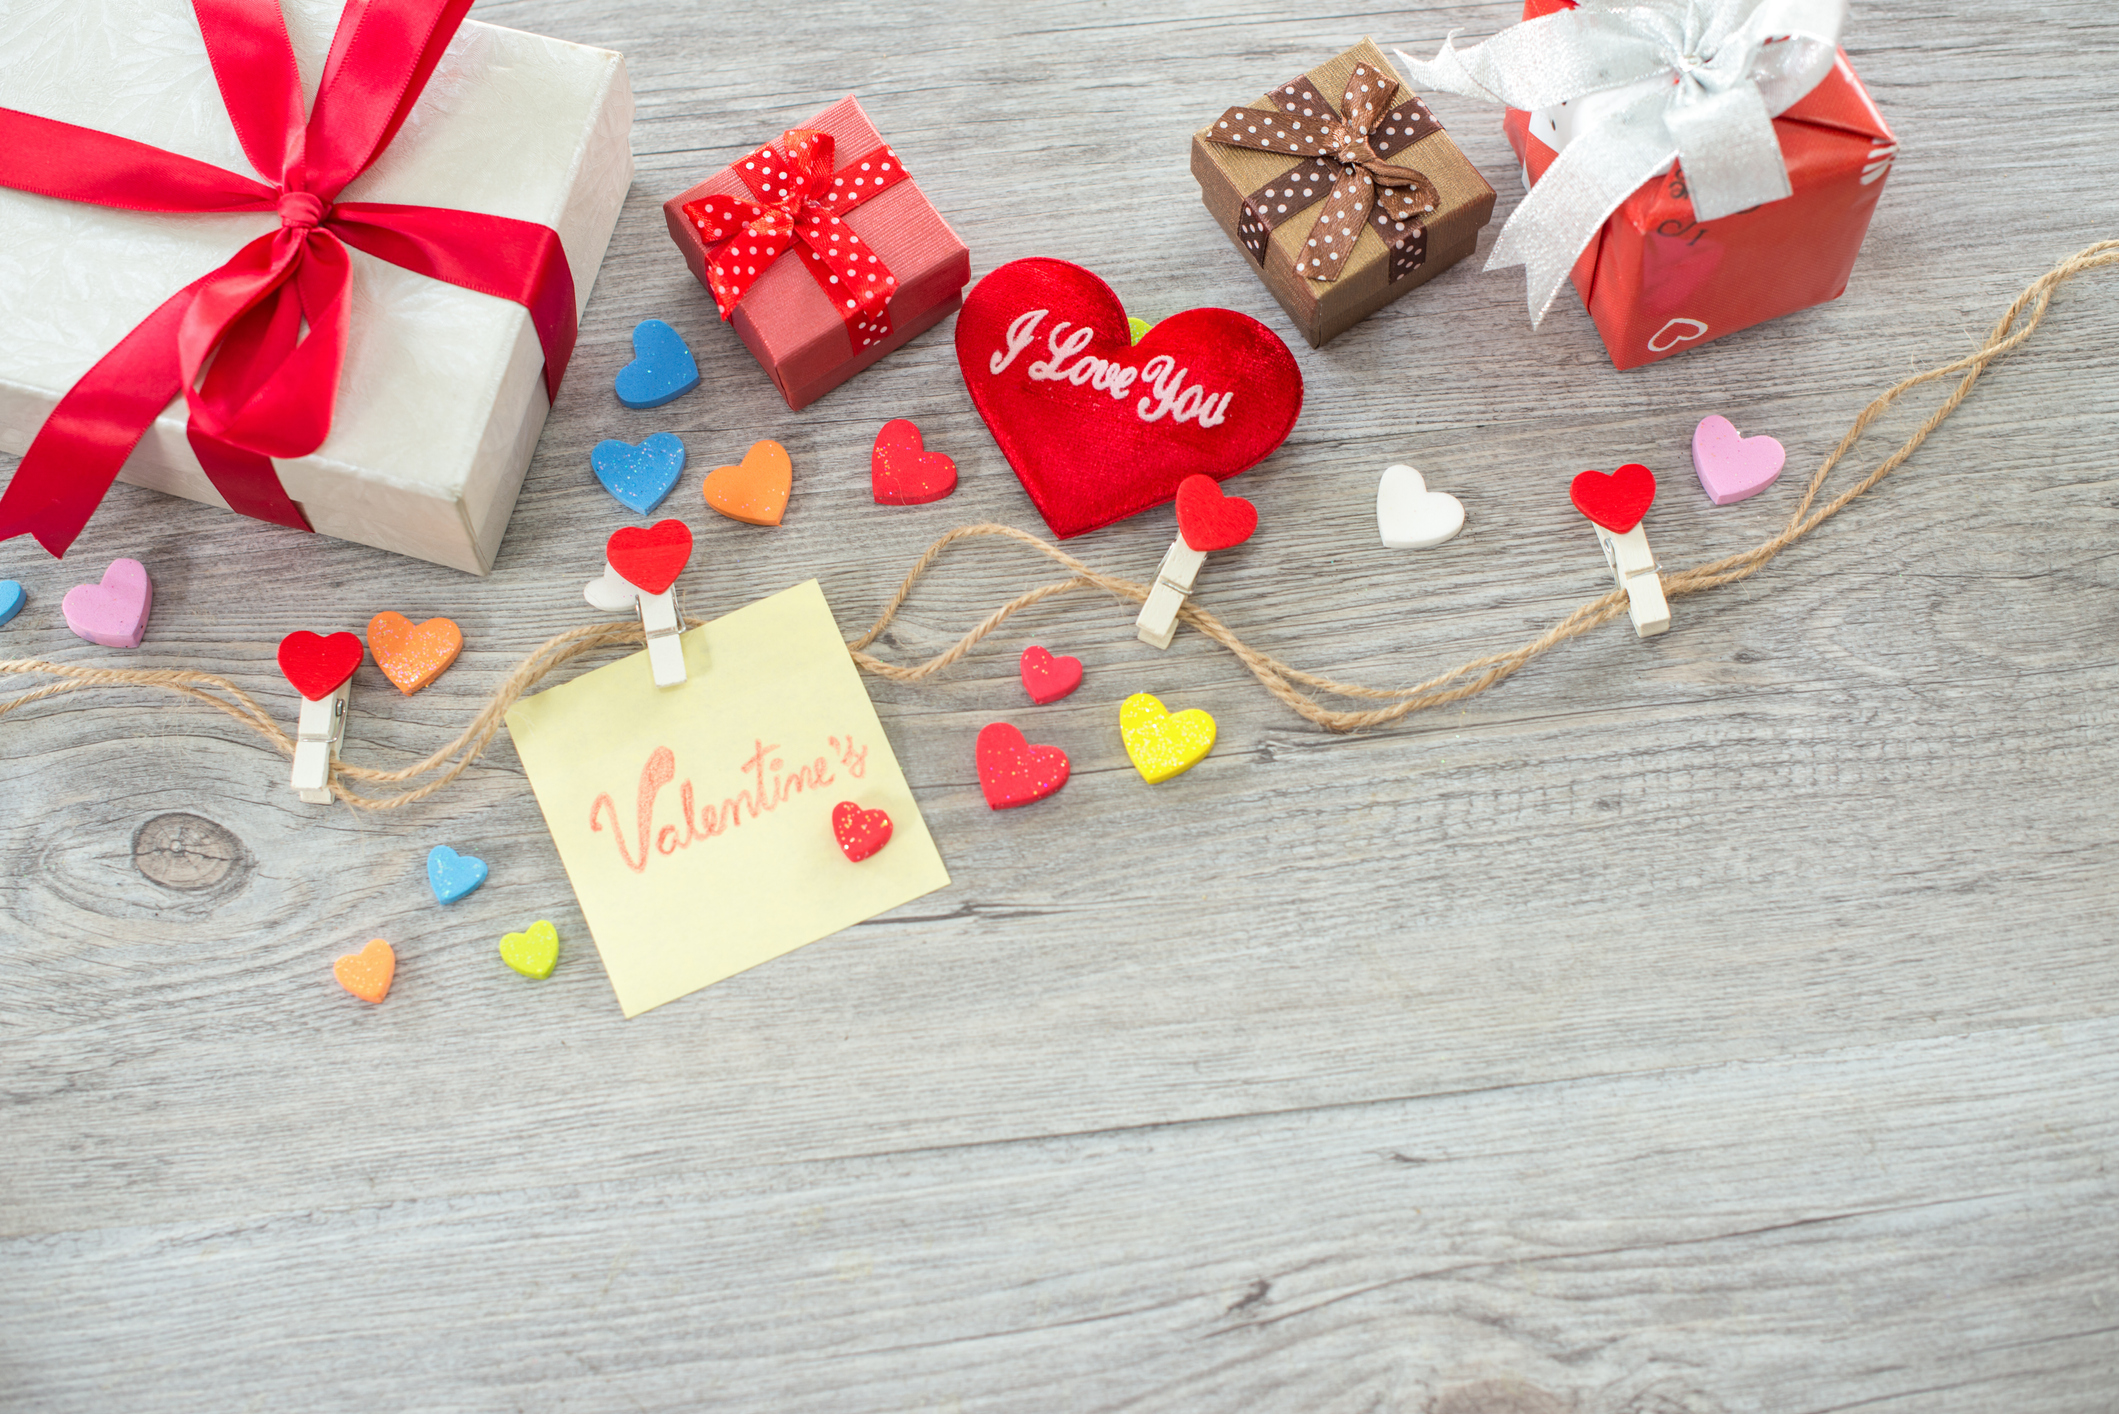 3 ideas Rápidas para Decorar con Mucho Mucho Corazón 💖San Valentin 